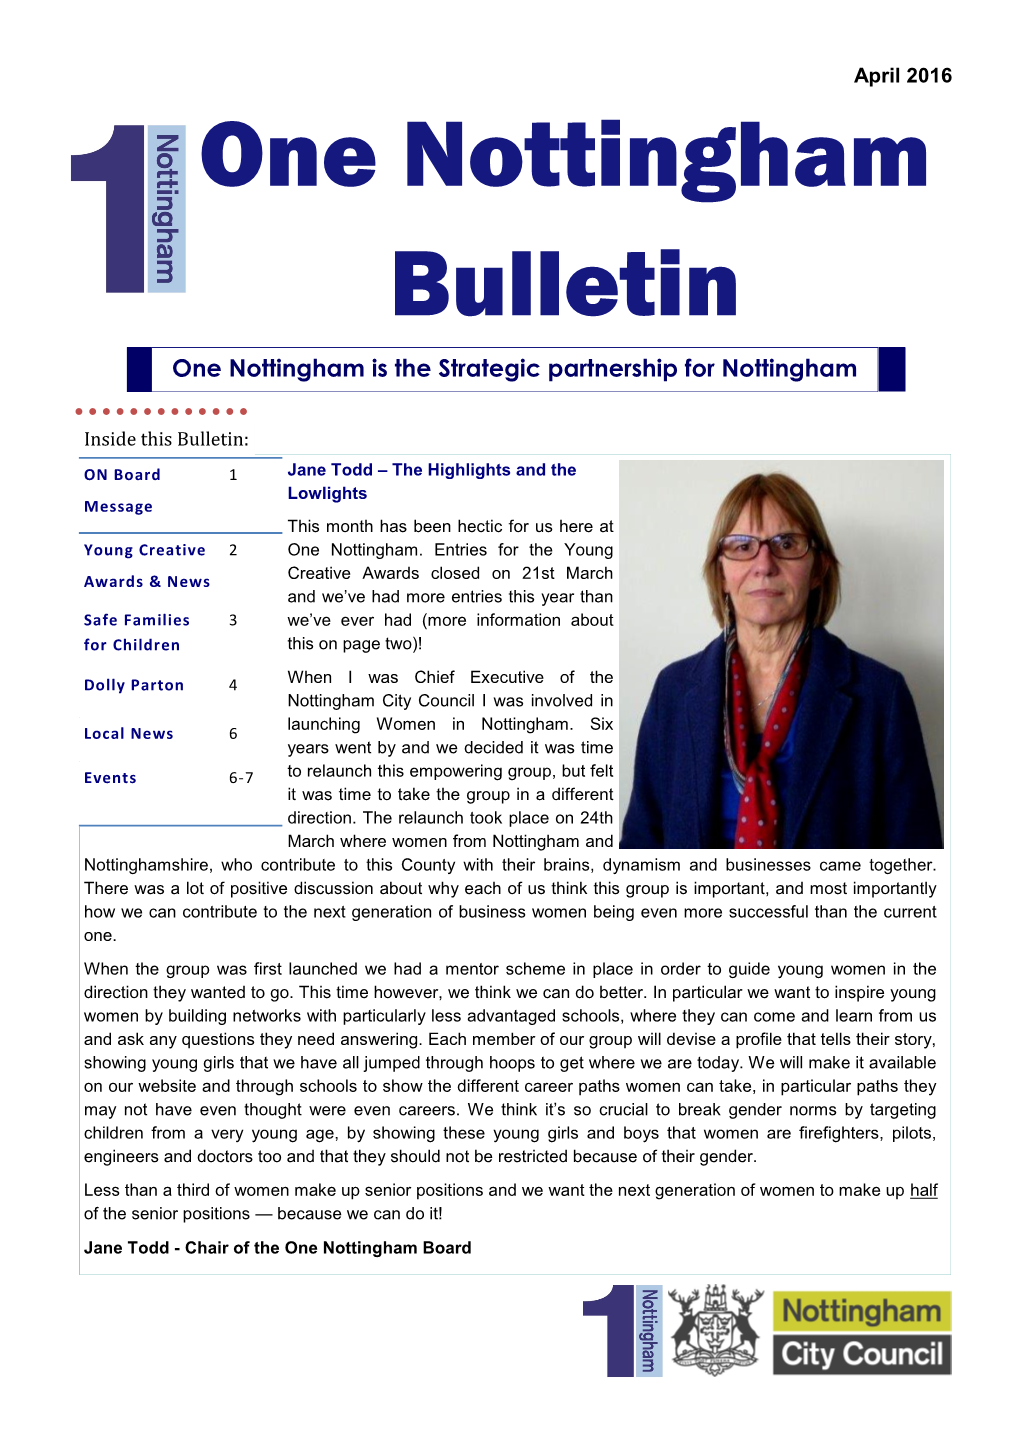 One Nottingham Bulletin One Nottingham Is the Strategic Partnership for Nottingham